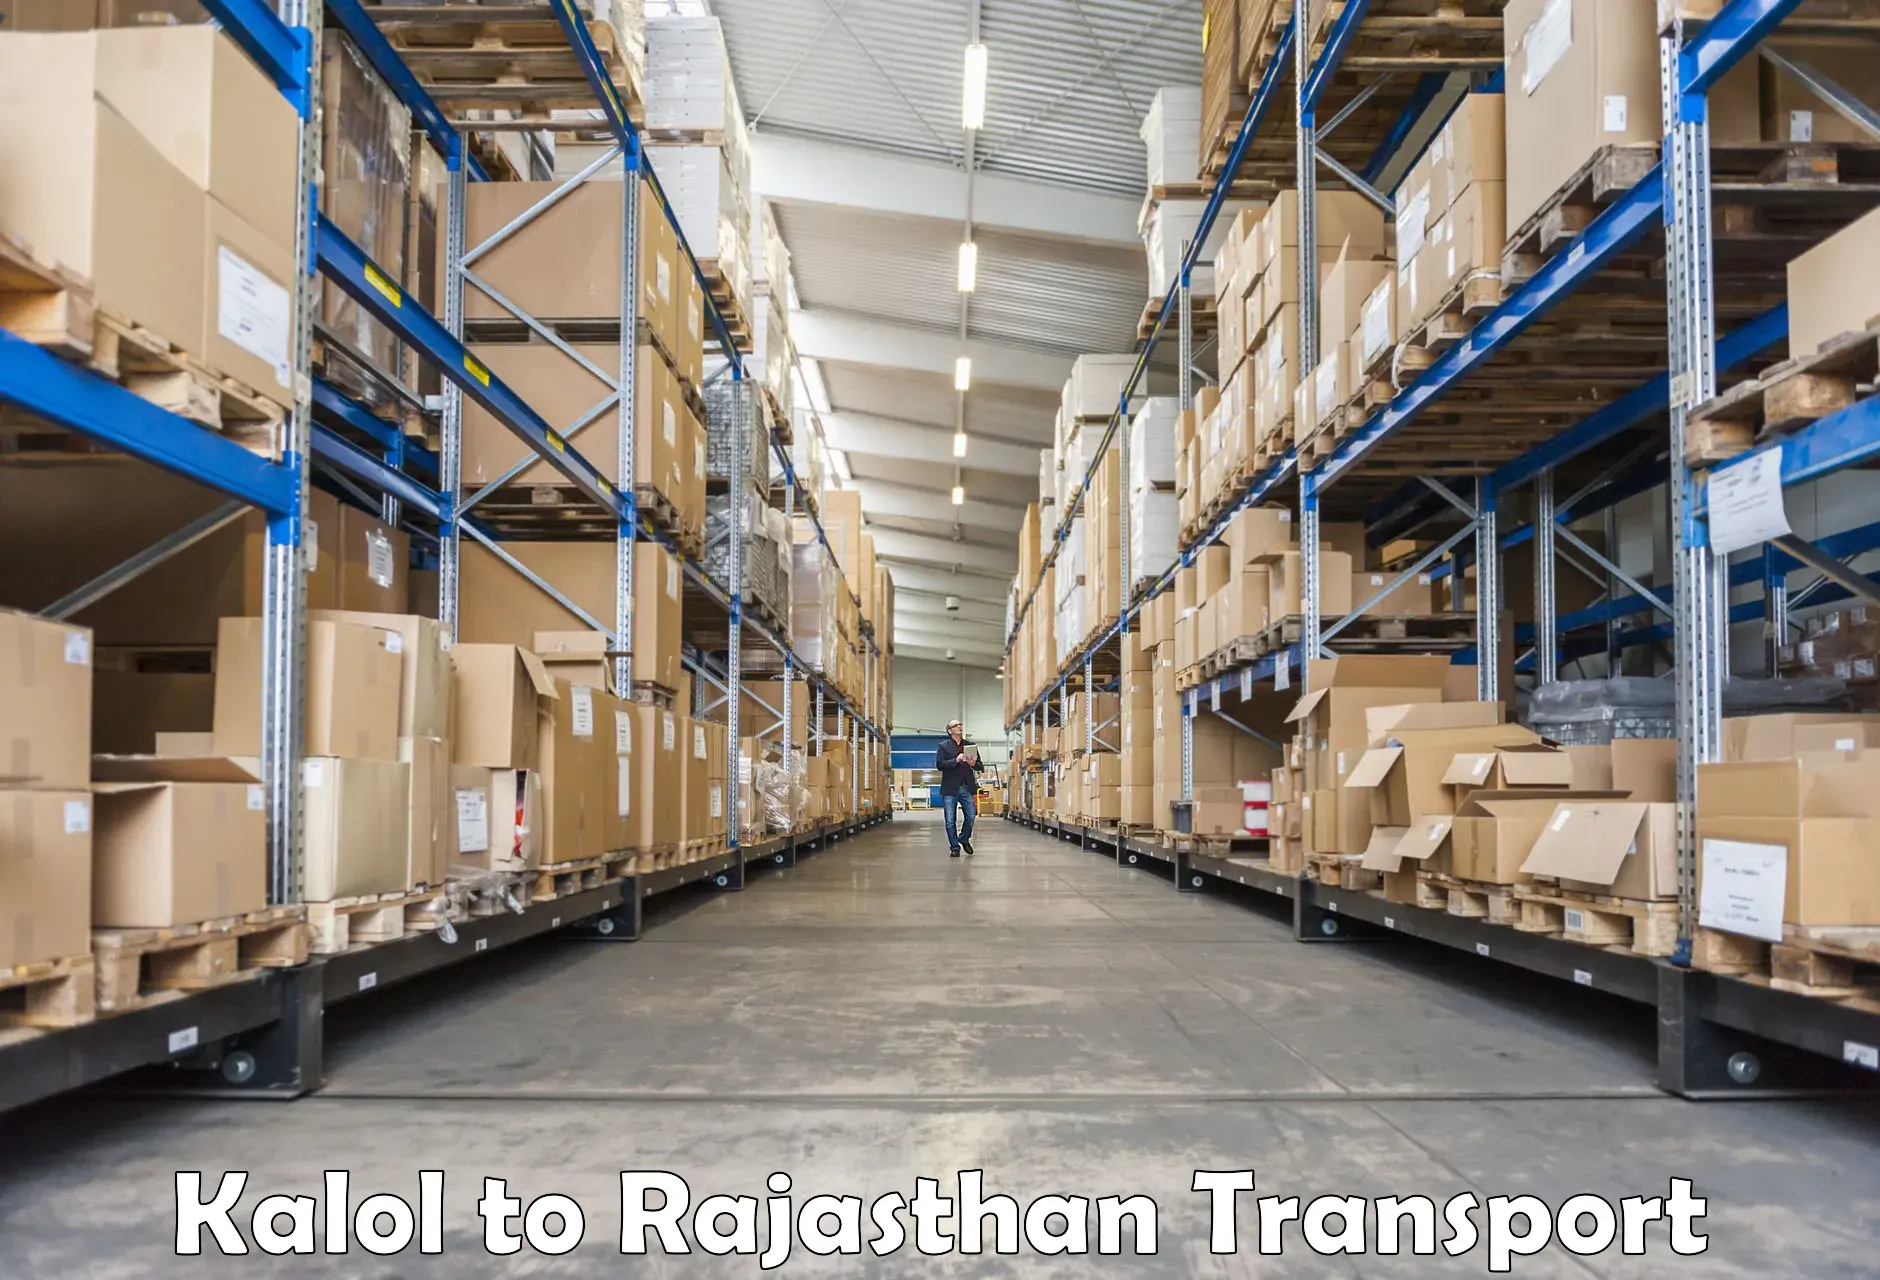 Furniture transport service Kalol to Rajasthan